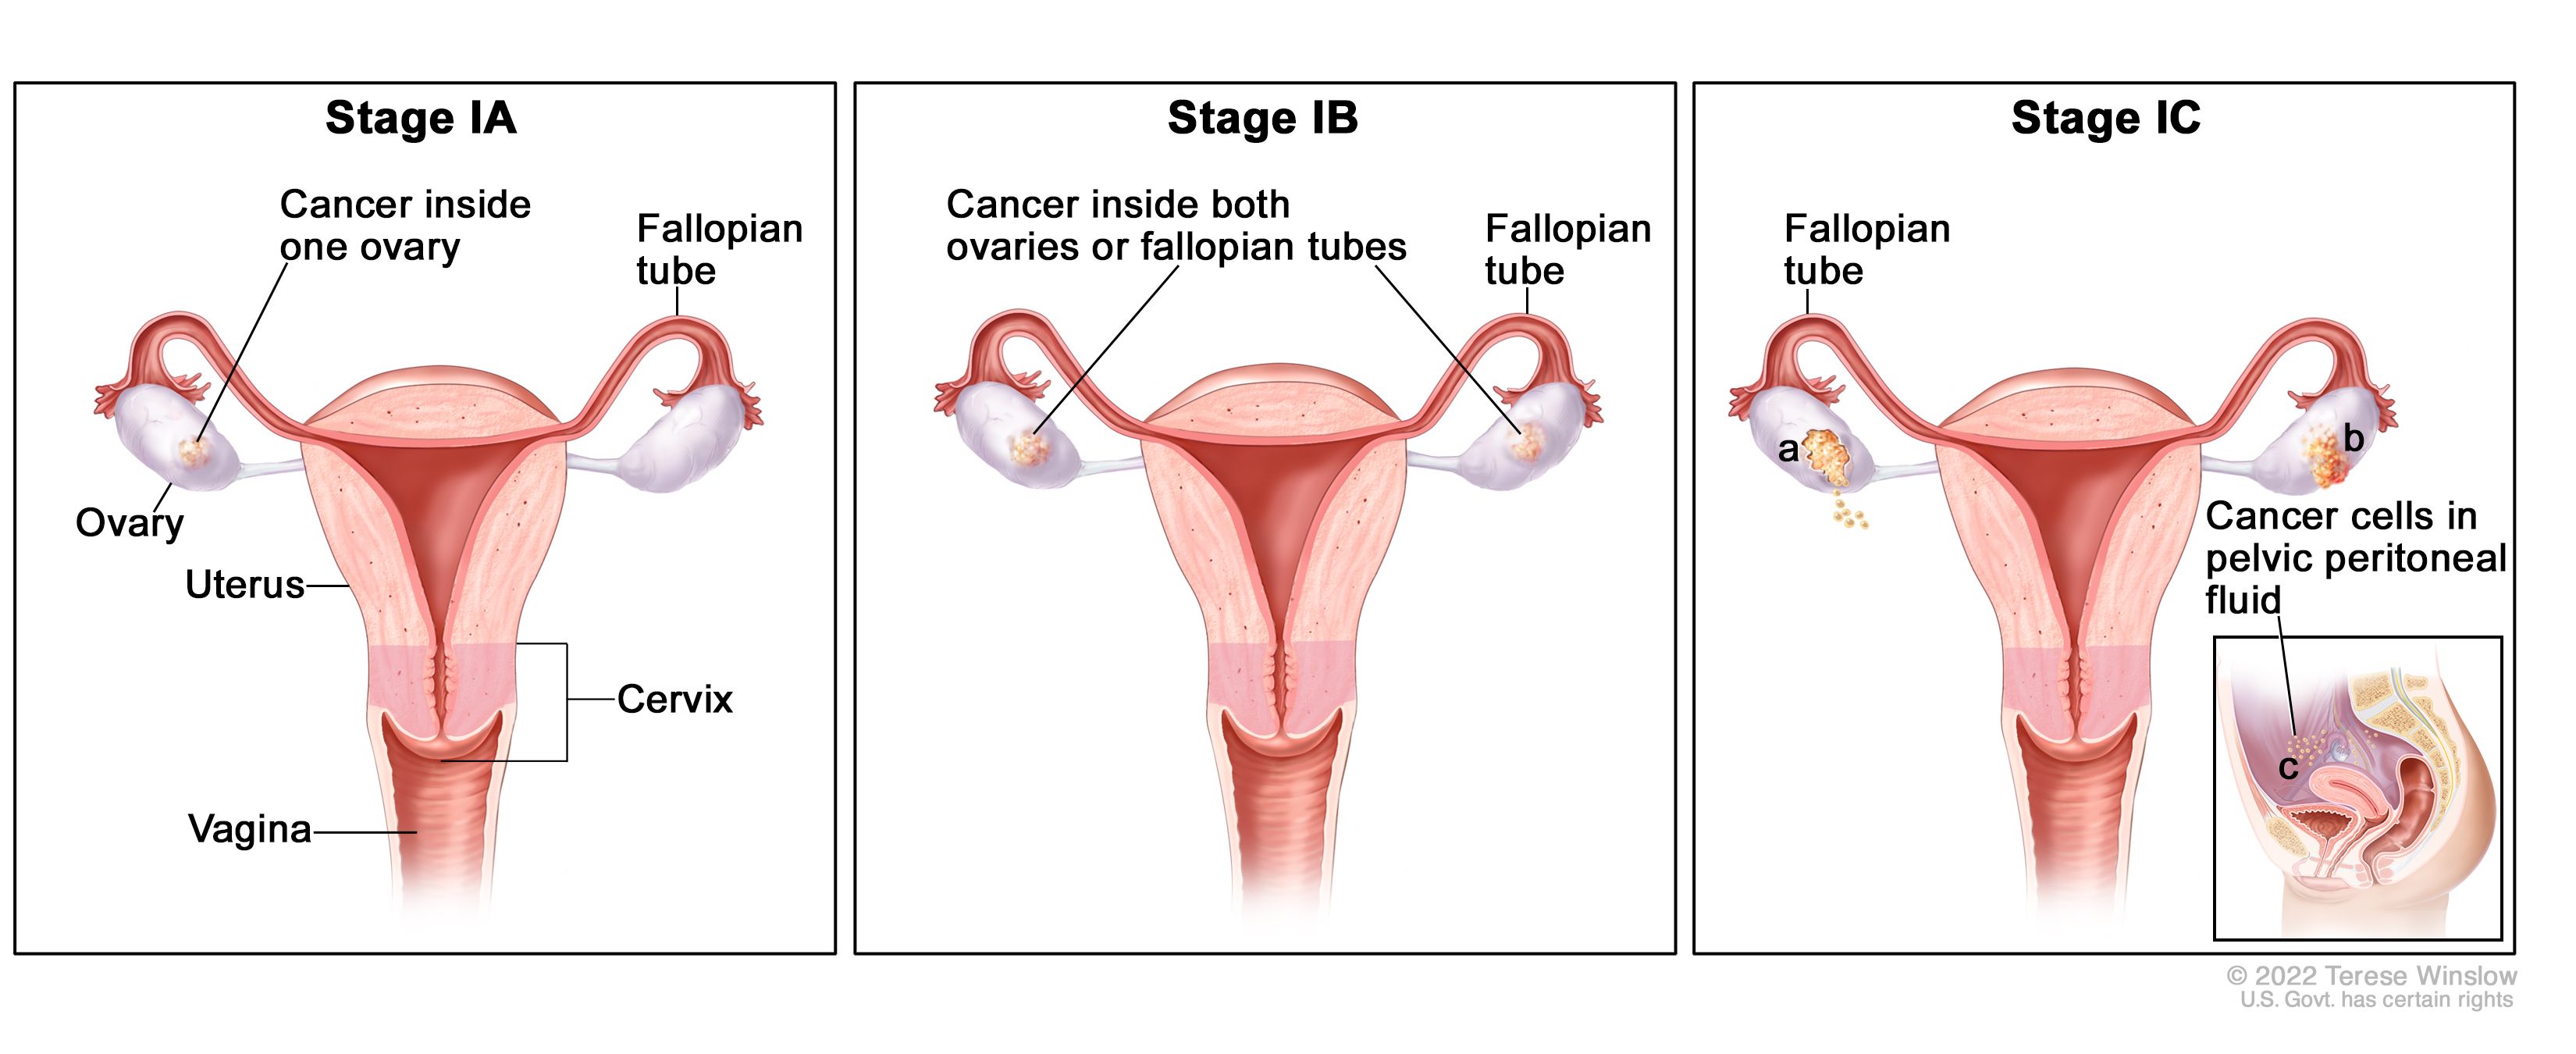 peritoneal cancer fallopian tube)